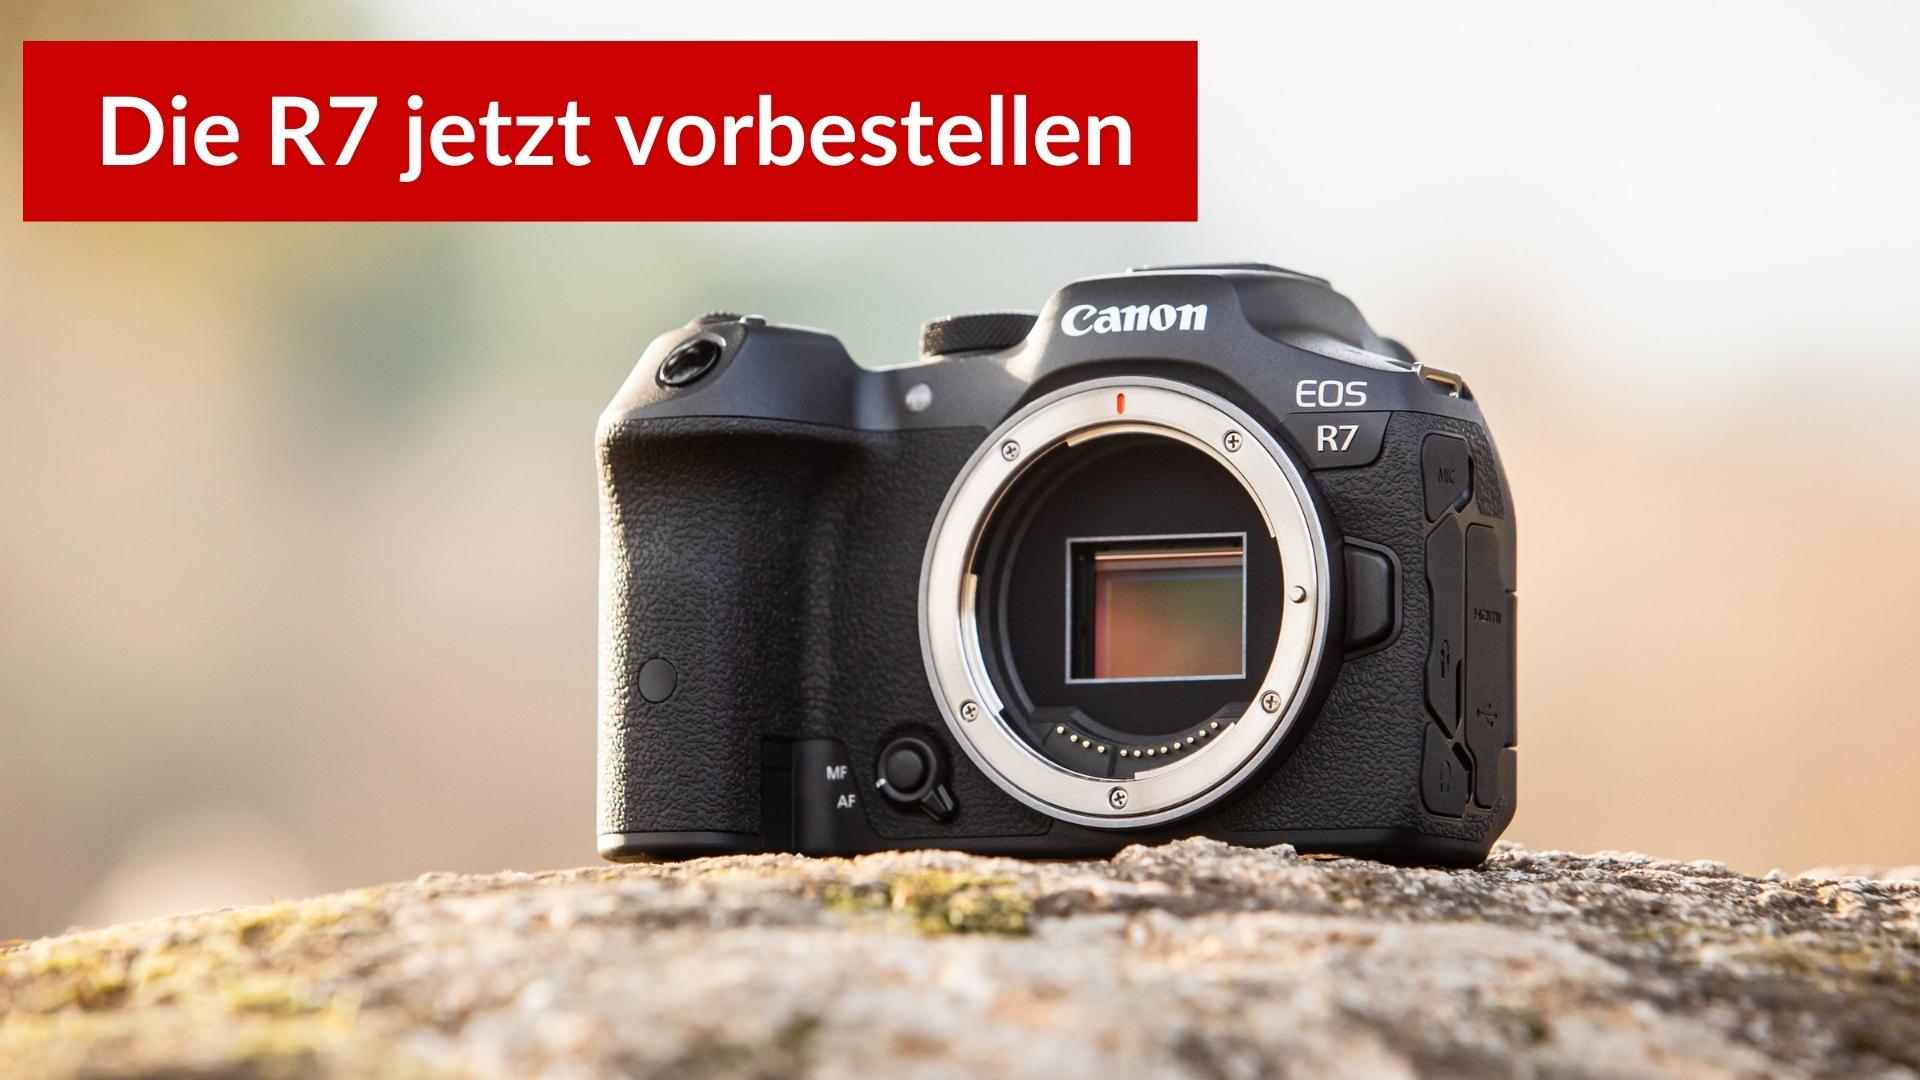 Canon EOS R7 vorbestellen - Canon EOS R7/R10: Die neuen APS-C Könige?